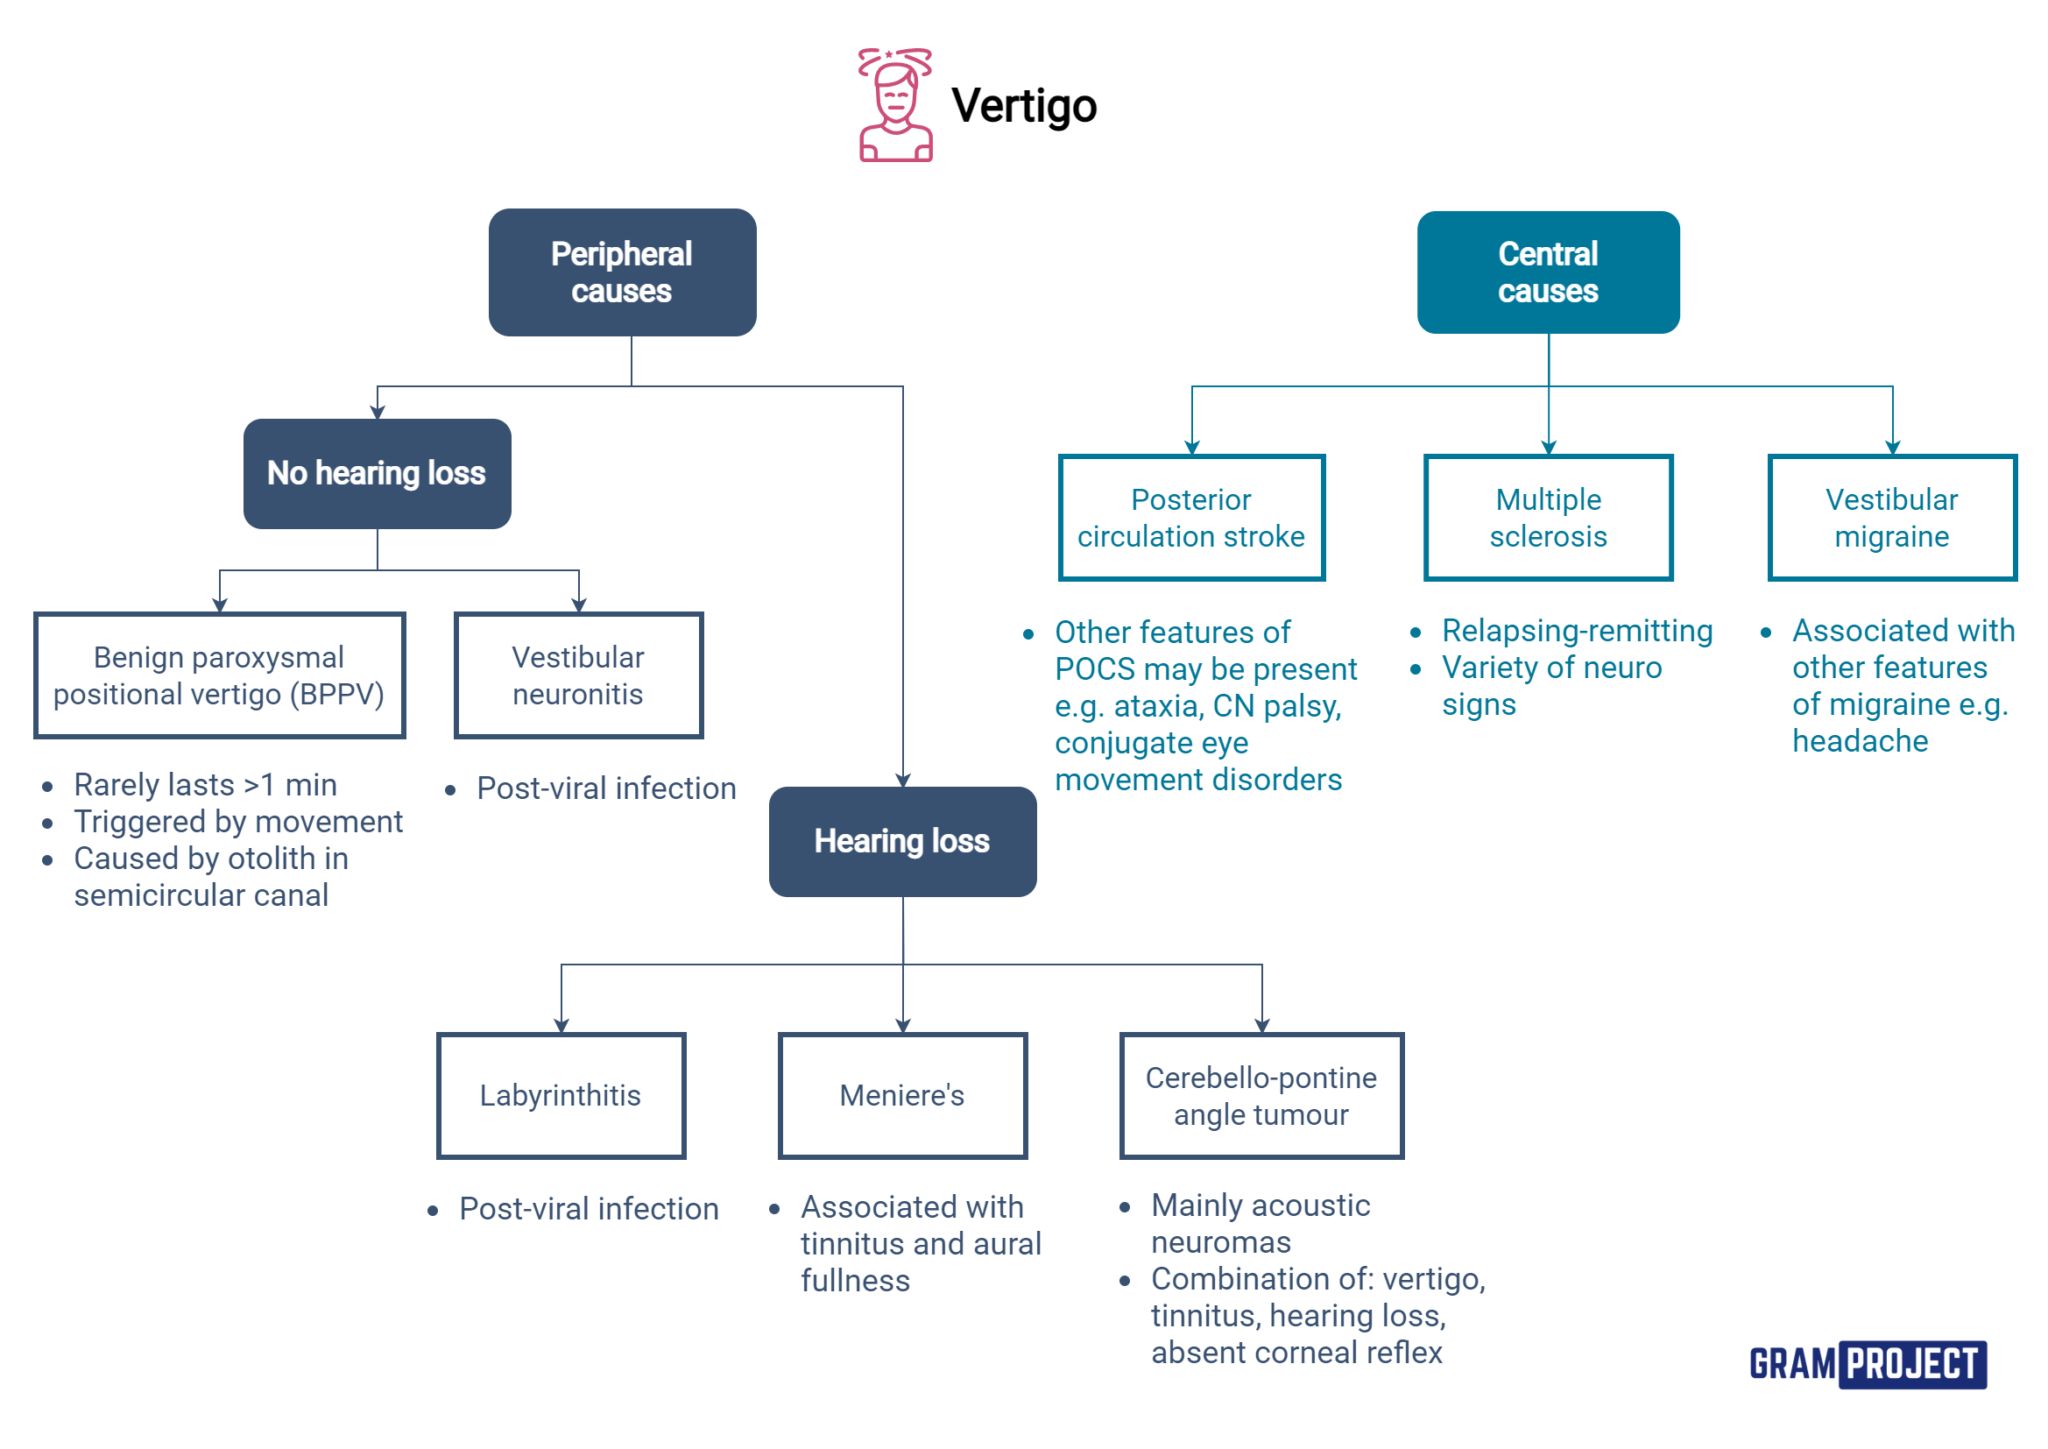 Vertigo diagnosis and treatment